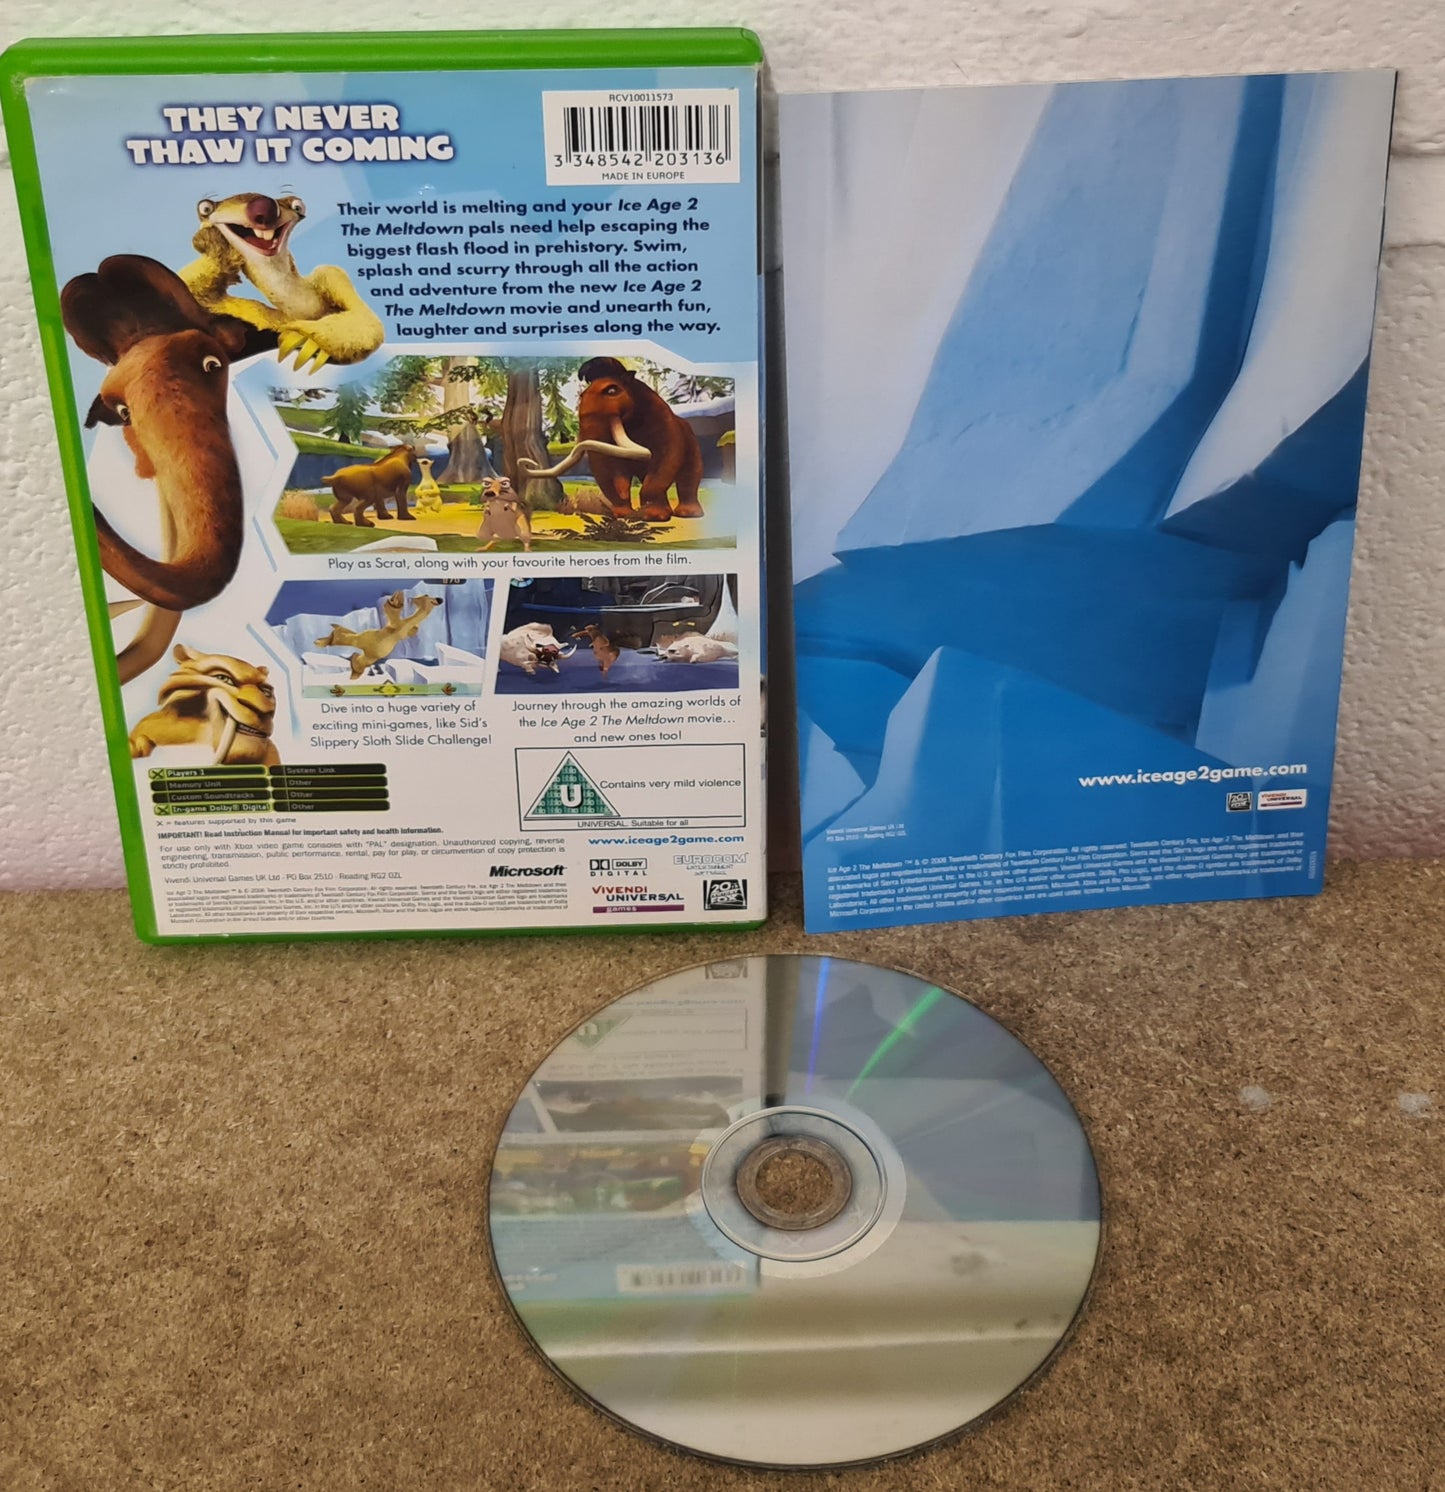 Ice Age 2 the Meltdown Microsoft Xbox Game